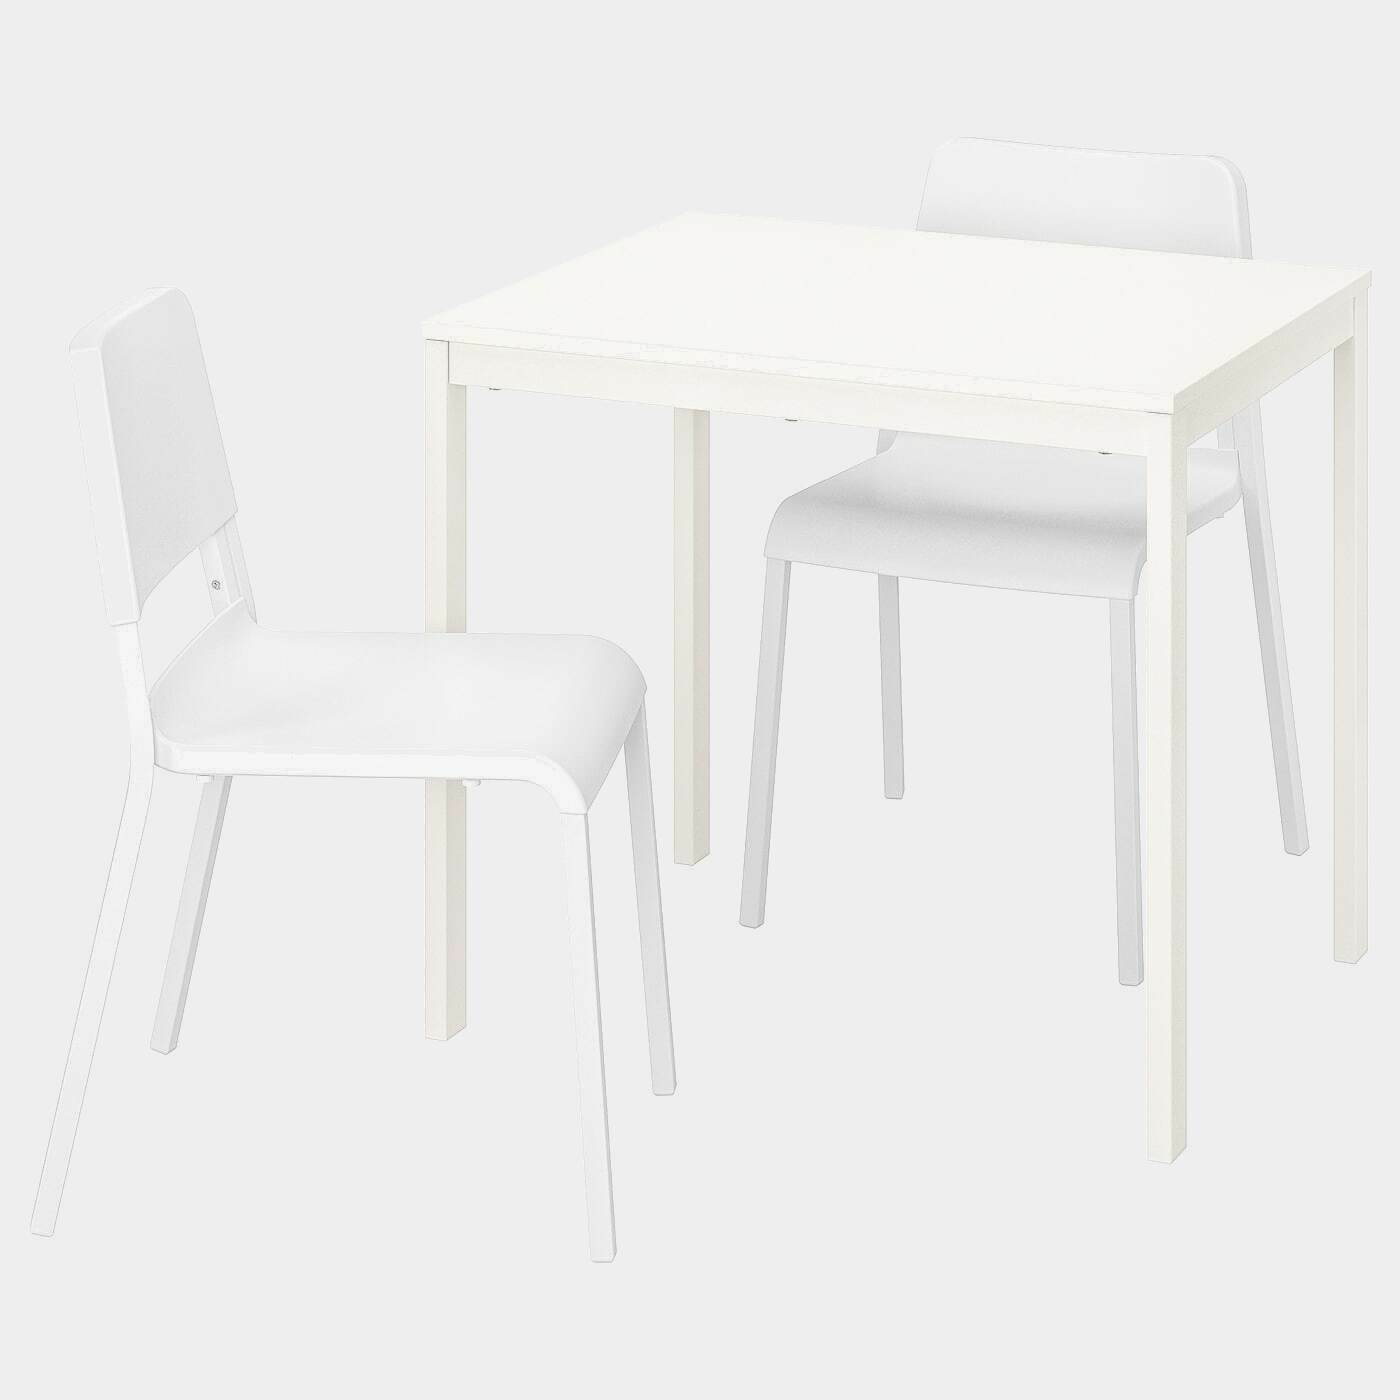 VANGSTA / TEODORES Tisch und 2 Stühle  - Essplatzgruppe - Möbel Ideen für dein Zuhause von Home Trends. Möbel Trends von Social Media Influencer für dein Skandi Zuhause.